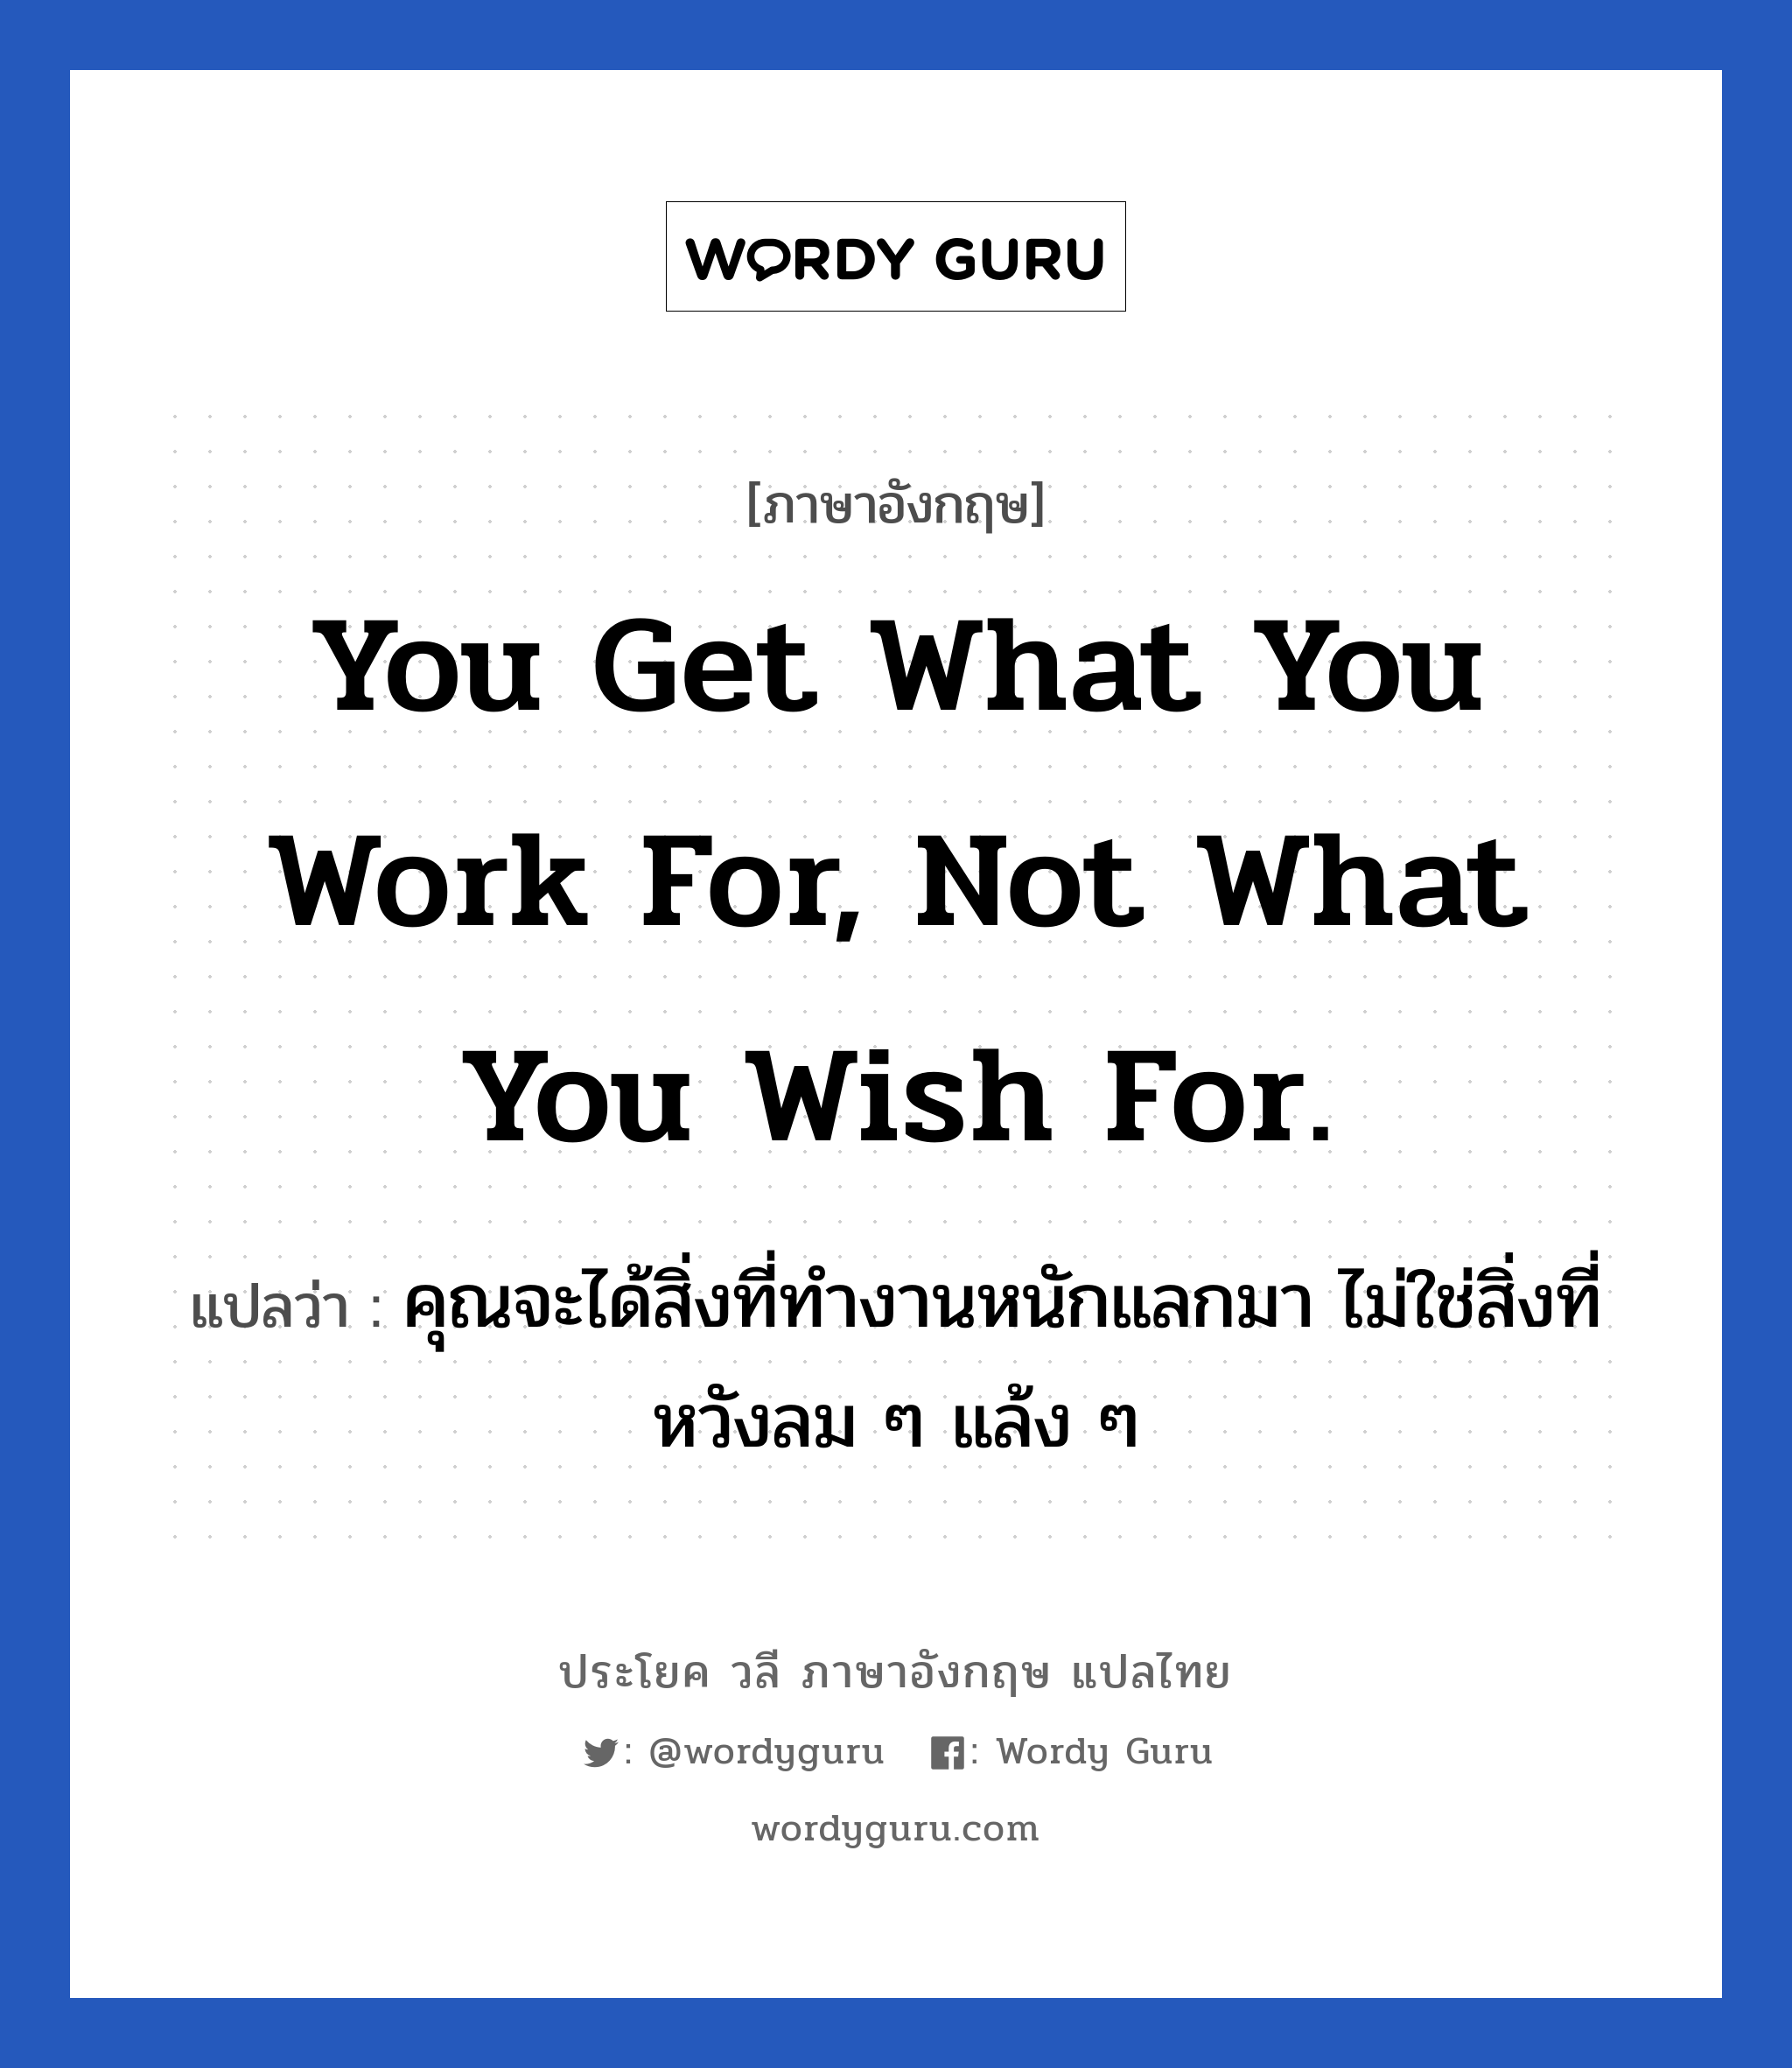 คุณจะได้สิ่งที่ทำงานหนักแลกมา ไม่ใช่สิ่งที่หวังลม ๆ แล้ง ๆ ภาษาอังกฤษ?, วลีภาษาอังกฤษ คุณจะได้สิ่งที่ทำงานหนักแลกมา ไม่ใช่สิ่งที่หวังลม ๆ แล้ง ๆ แปลว่า You get what you work for, not what you wish for. หมวด ในที่ทำงาน